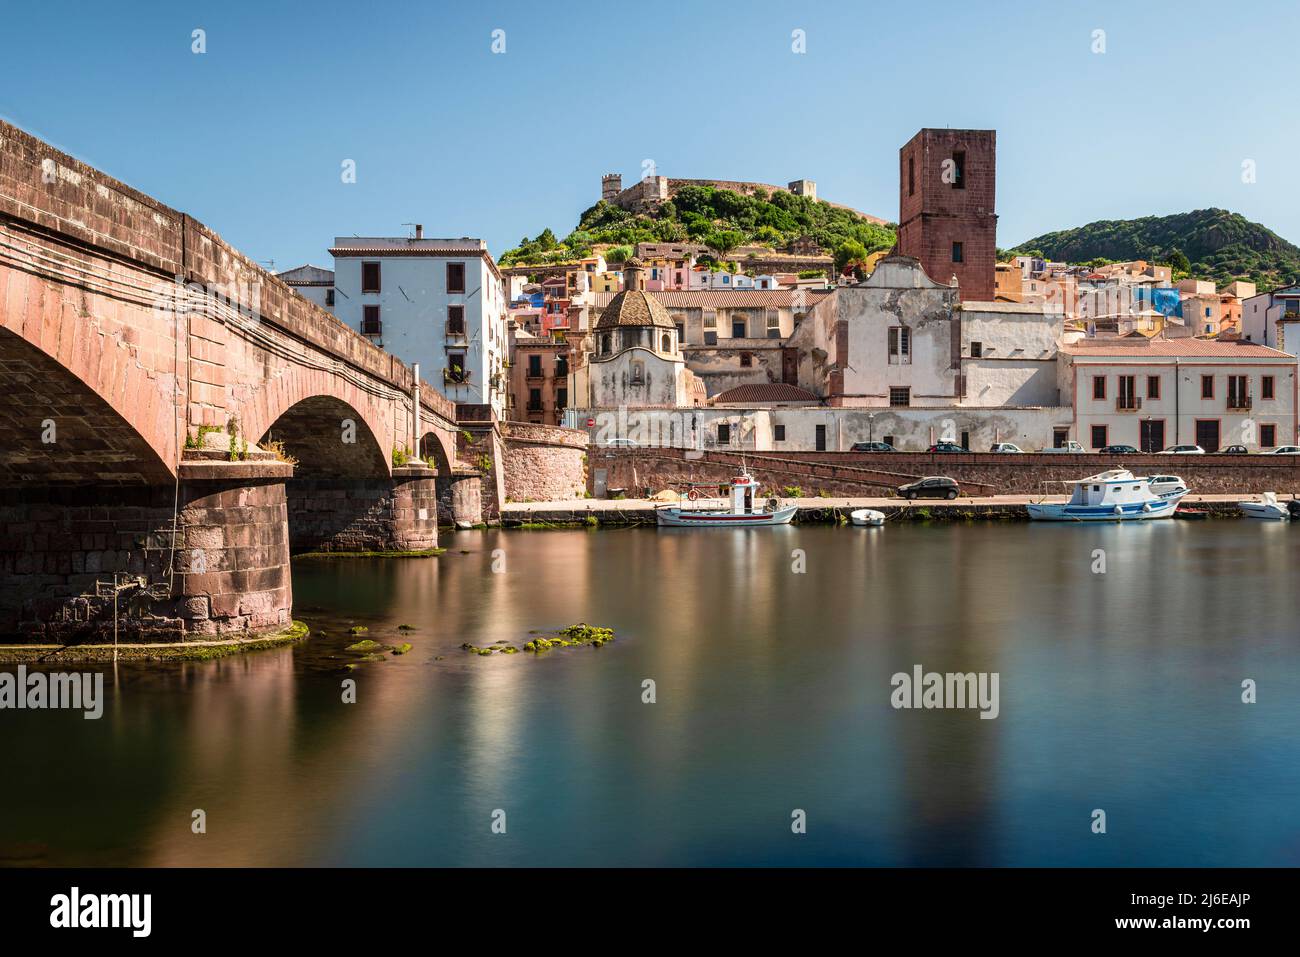 Malerisches Bosa - Steinbrücke über den Fluss Temo vor den bunten Häusern der Altstadt und der Burg Malaspina, Planargia, Sardinien Stockfoto